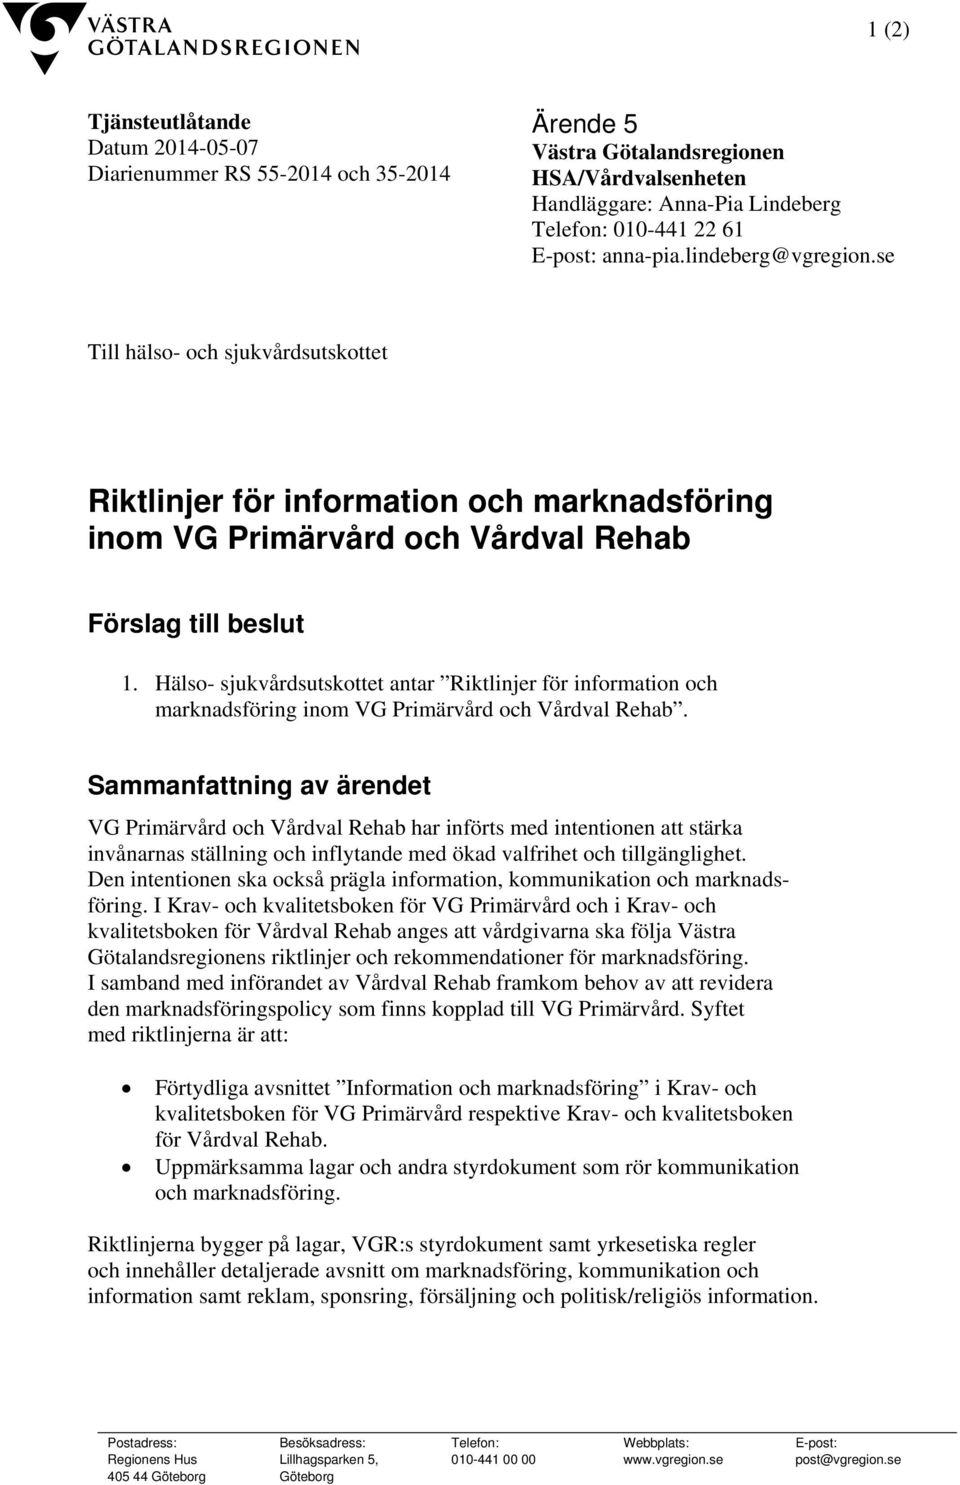 Hälso- sjukvårdsutskottet antar Riktlinjer för information och marknadsföring inom VG Primärvård och Vårdval Rehab.